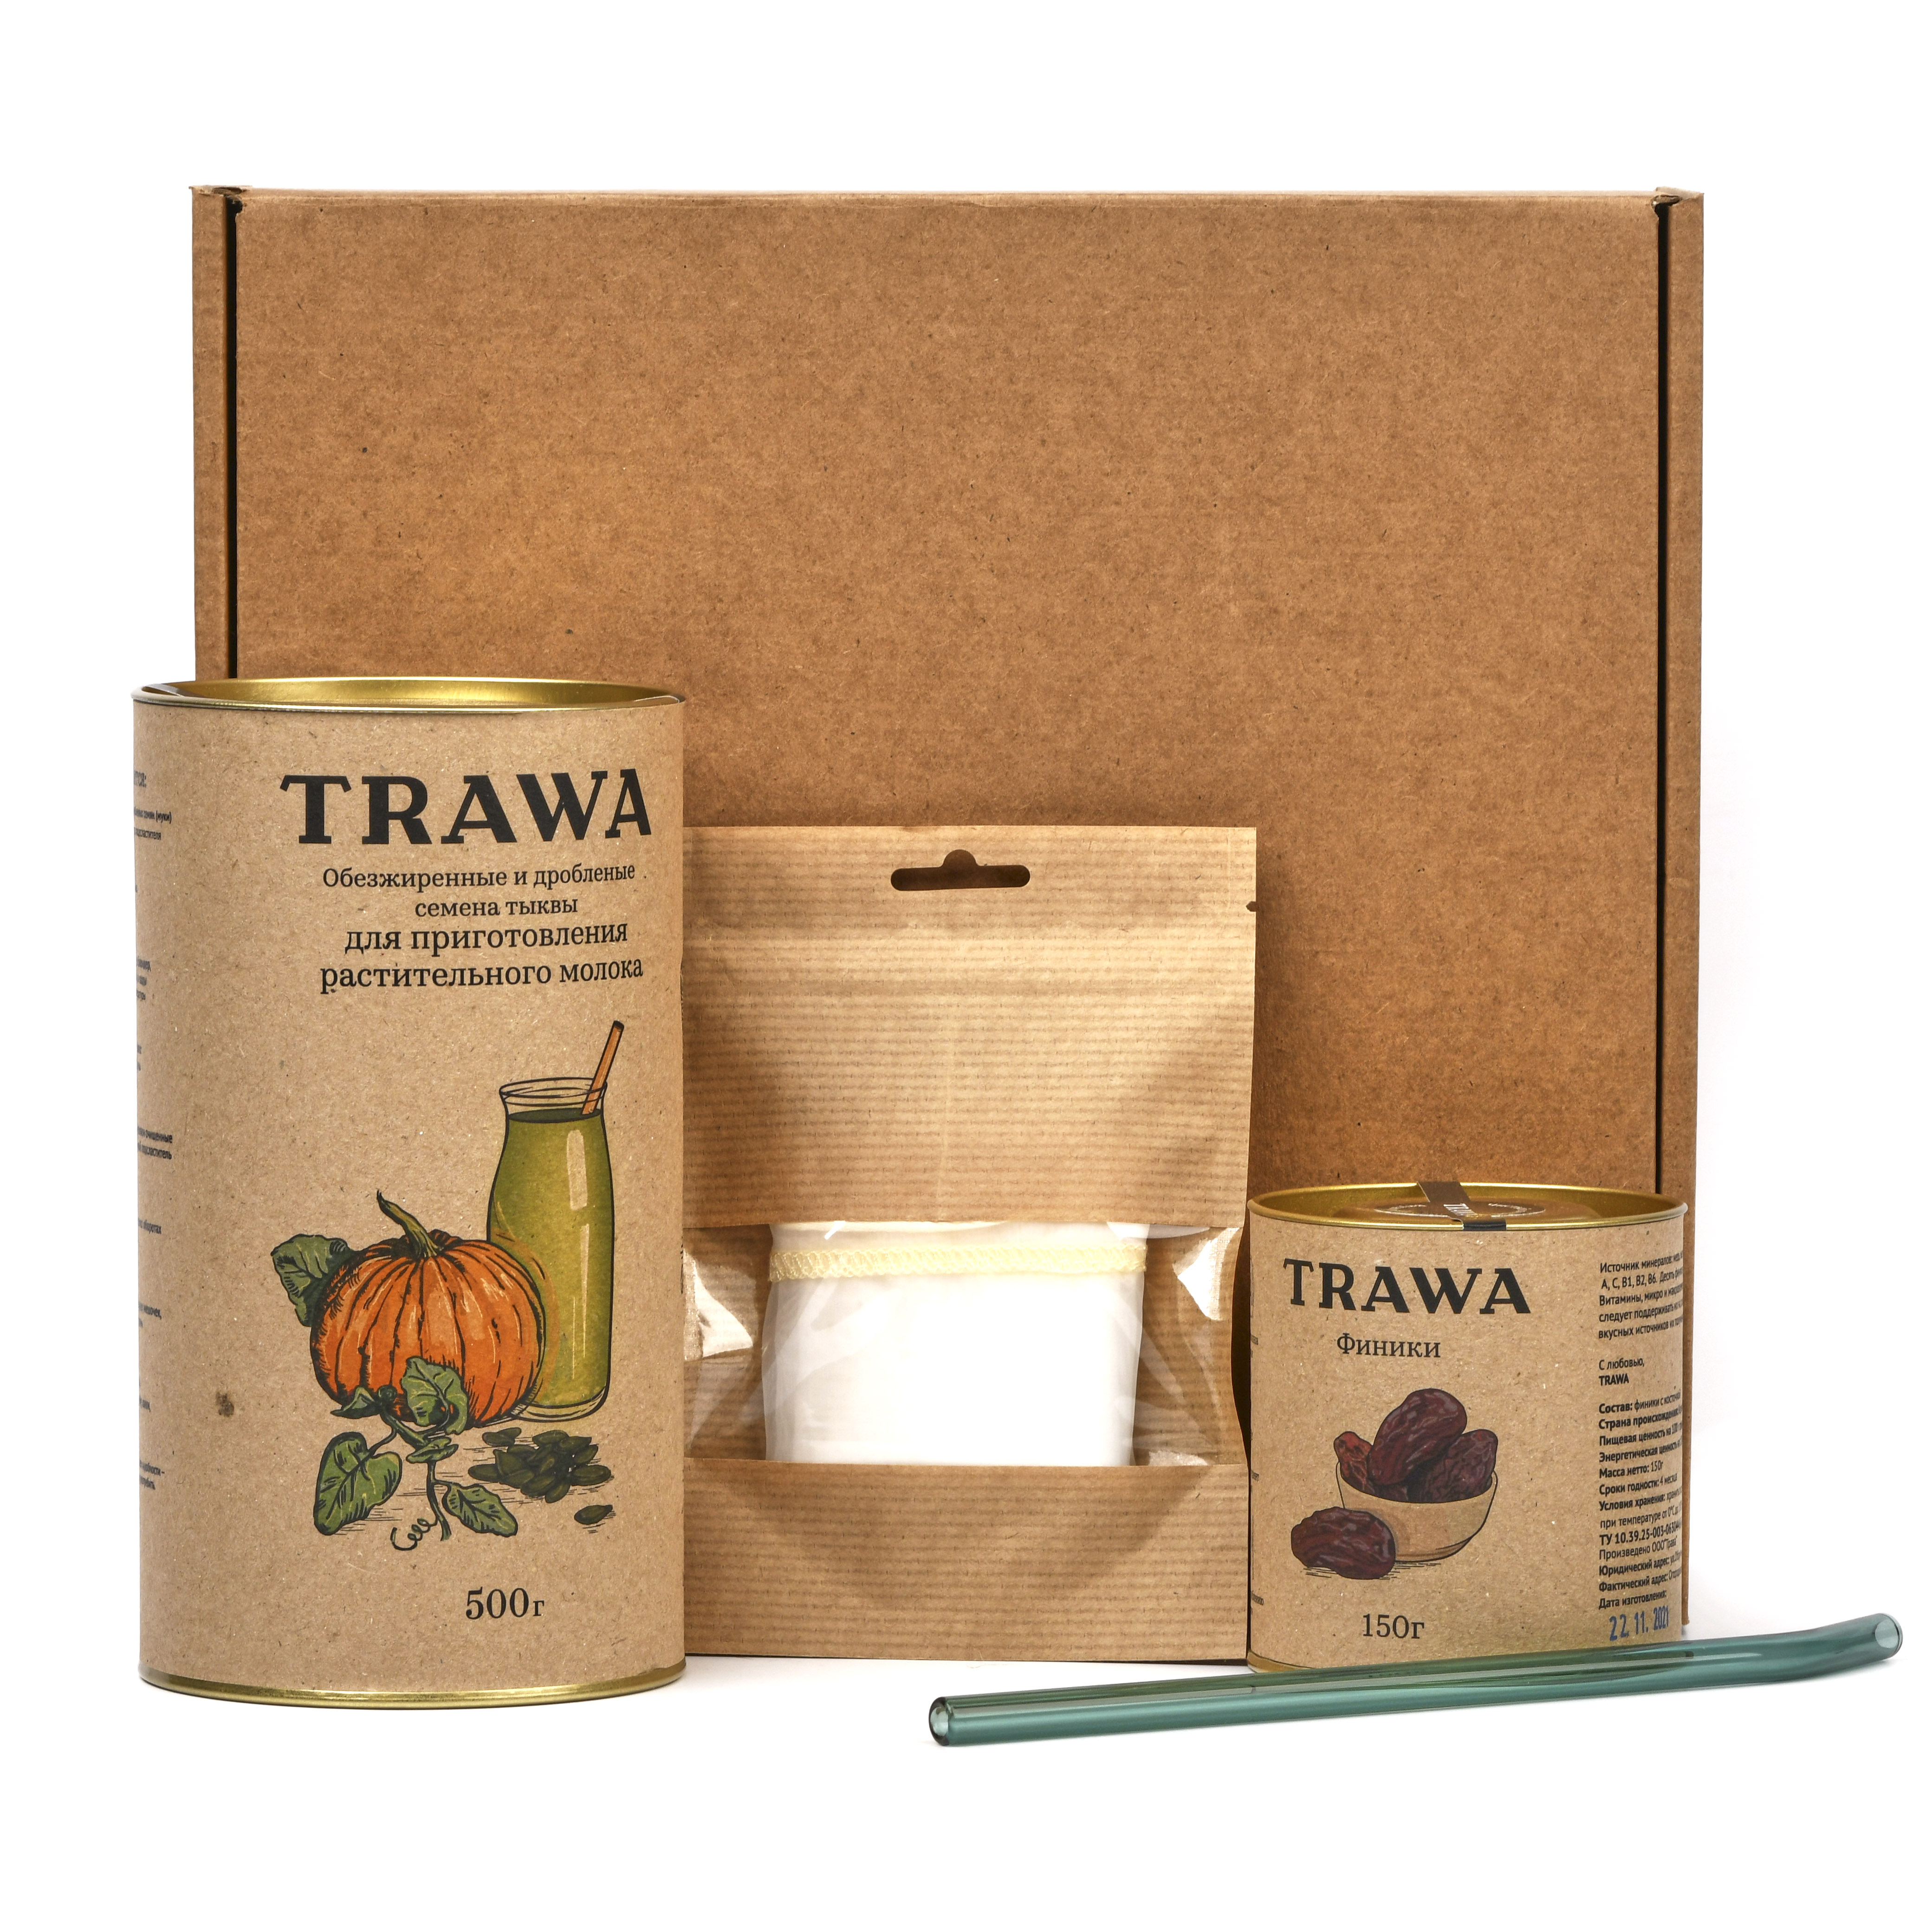 Набор для приготовления растительного молока, Trawa - 700 г